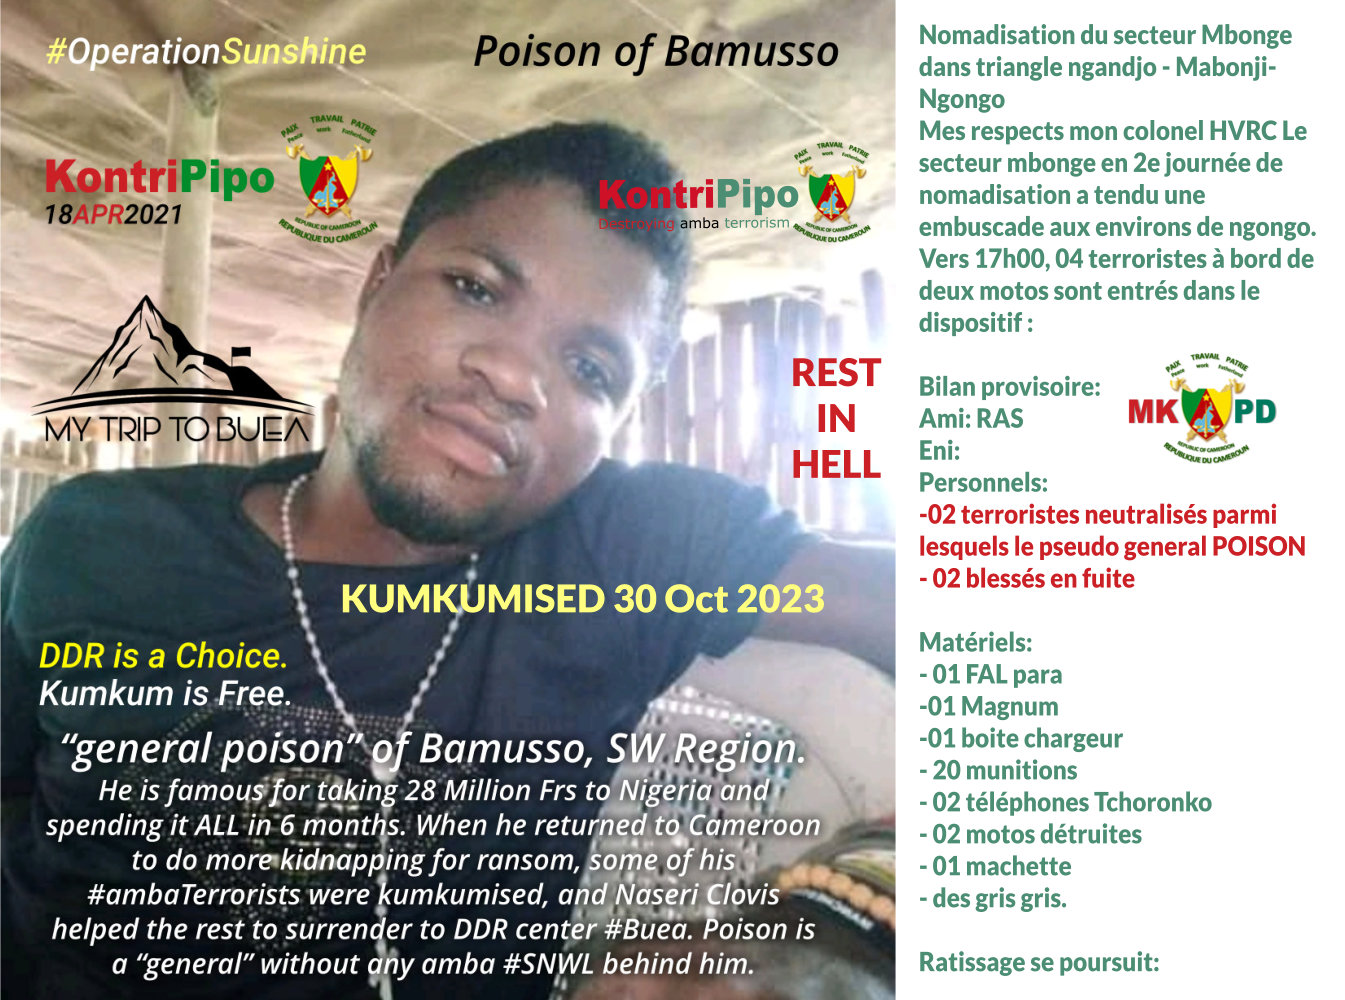 Generat Poison of Bamusso kumkumised 30 Oct 2023